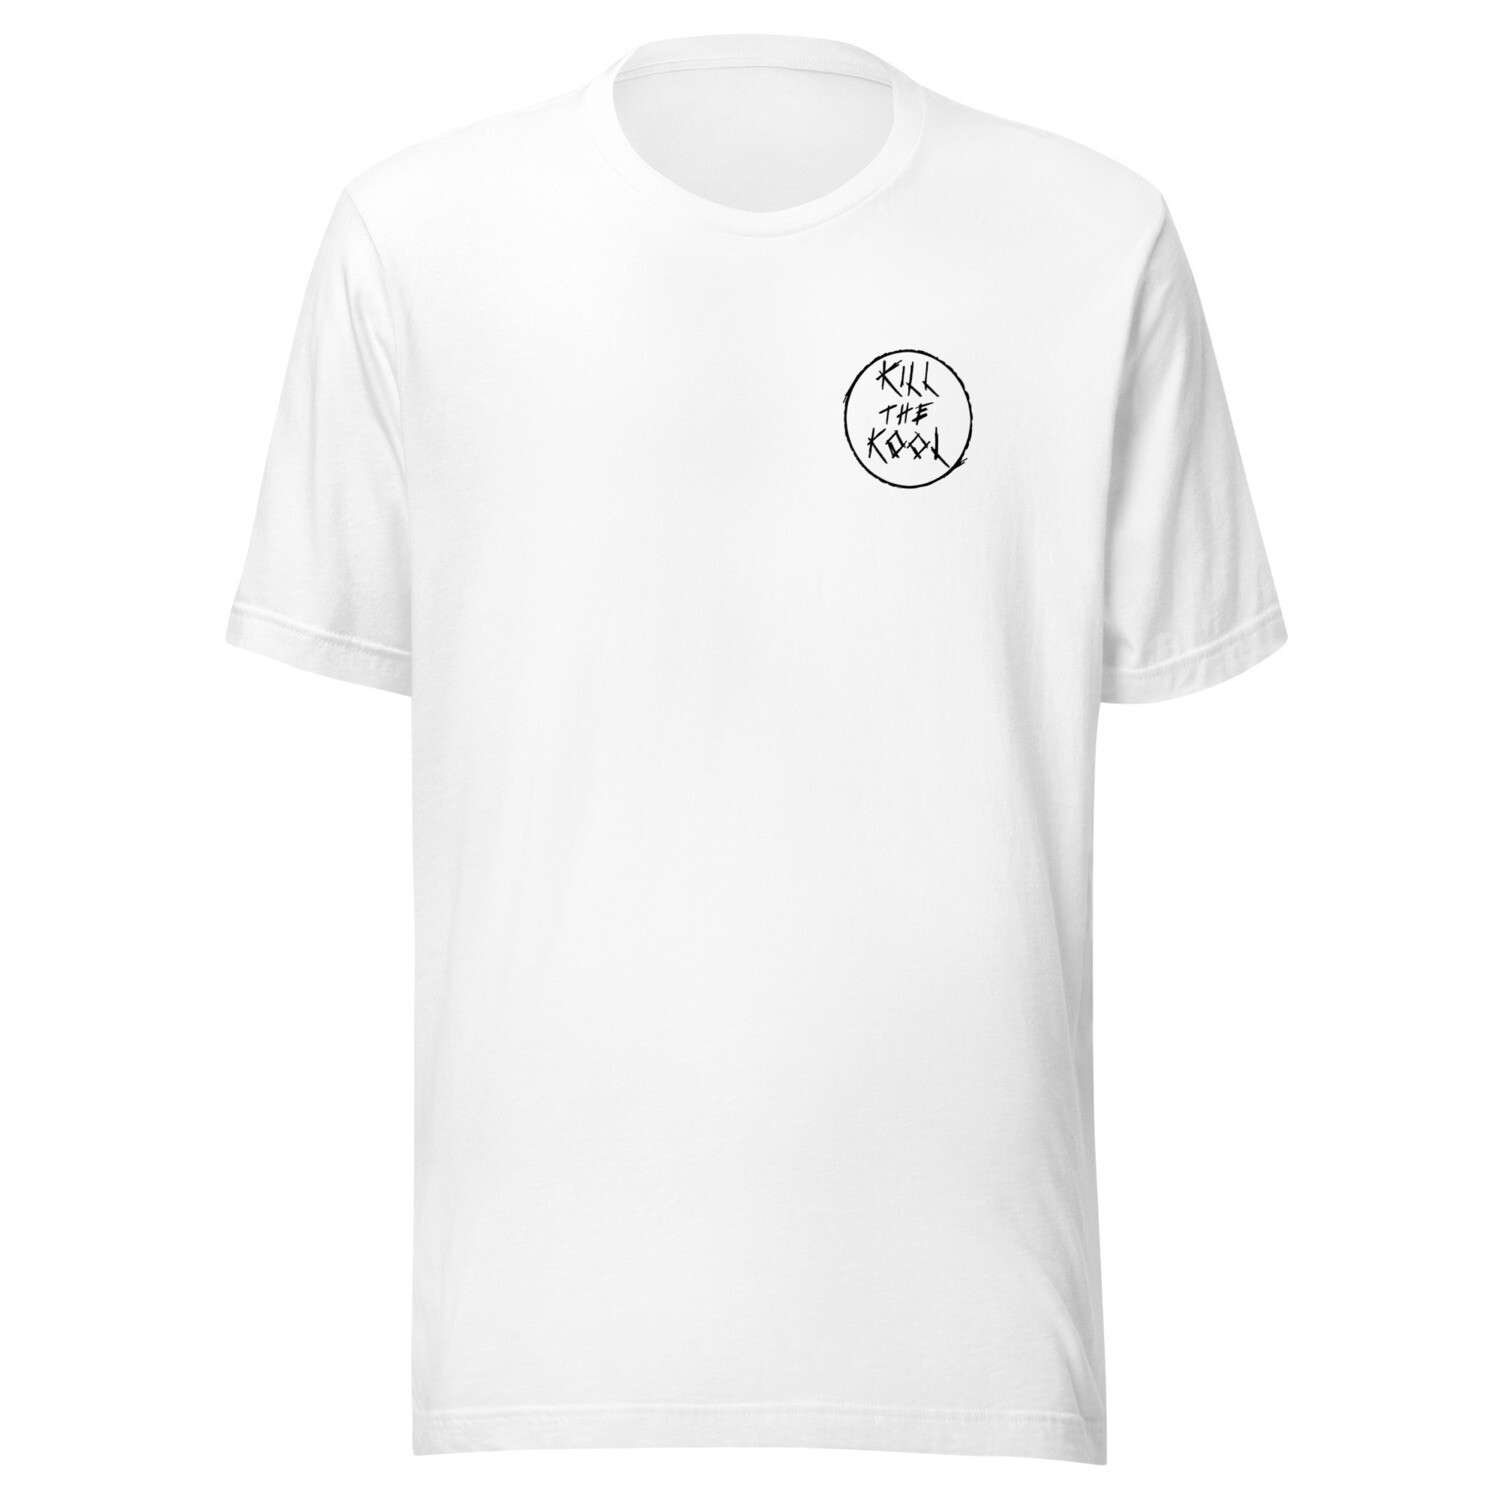 KTK White T-Shirt